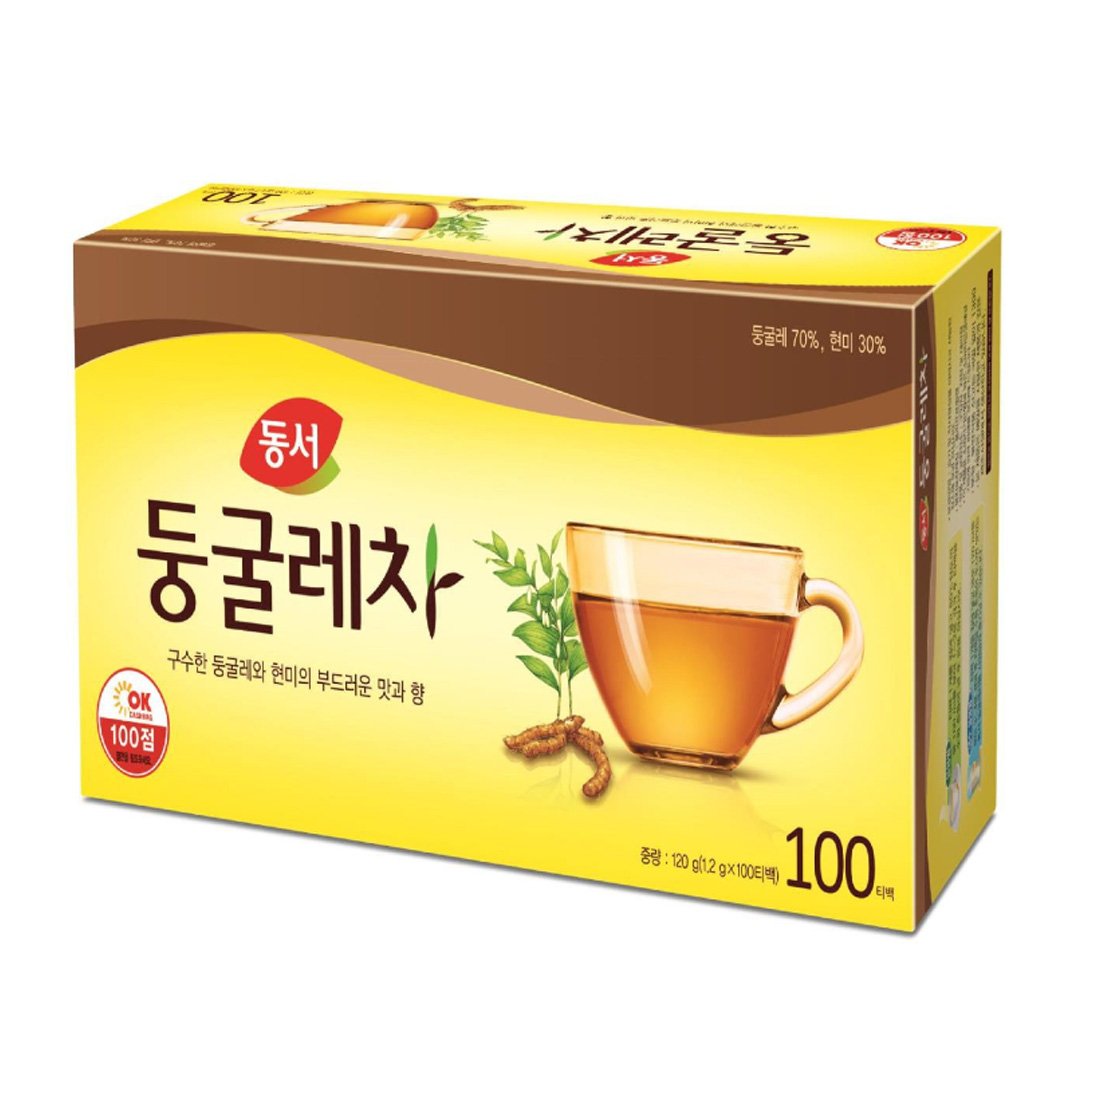 Korea Herb TEA Dongsuh Brown Solomon's Seal Tea bags 100